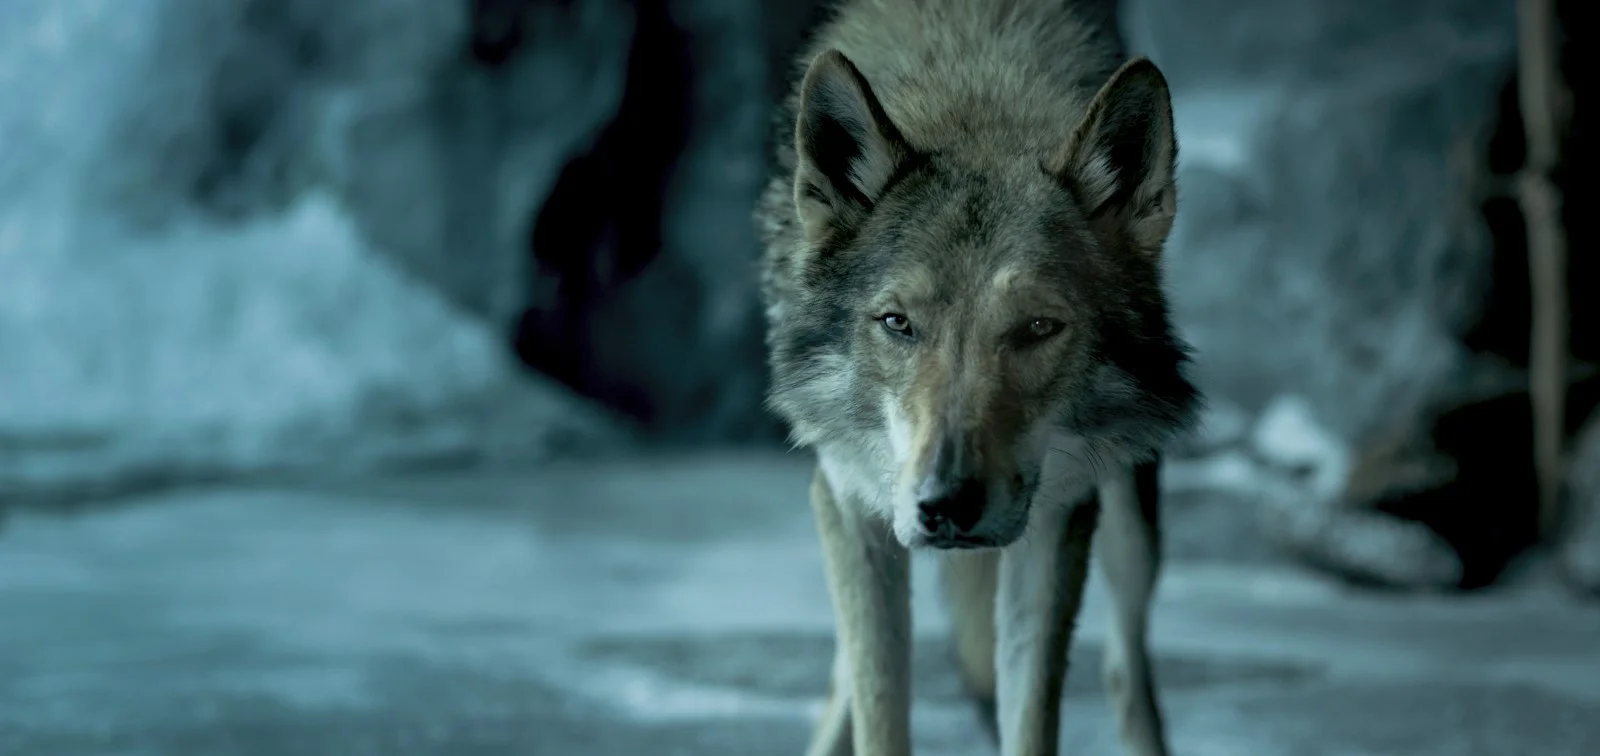 23 августа в России вышел «Альфа» — приключенческий фильм о дружбе мальчика с волком и их борьбе за выживание в доисторические времена. Объясняем, кому и зачем его стоит смотреть.